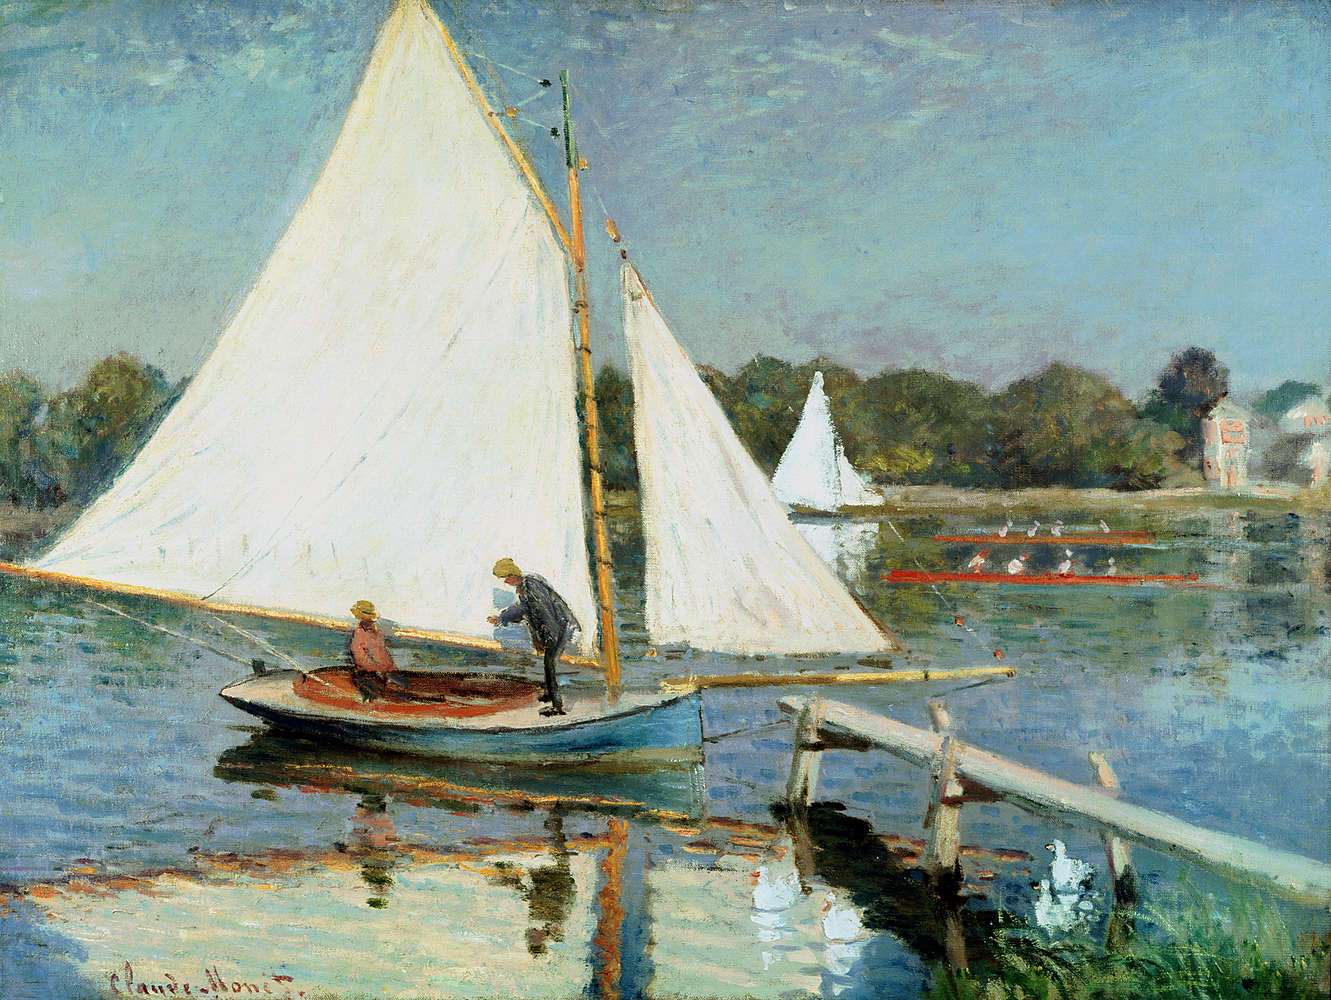             Fototapete "Segeln bei Argenteuil" von Claude Monet
        